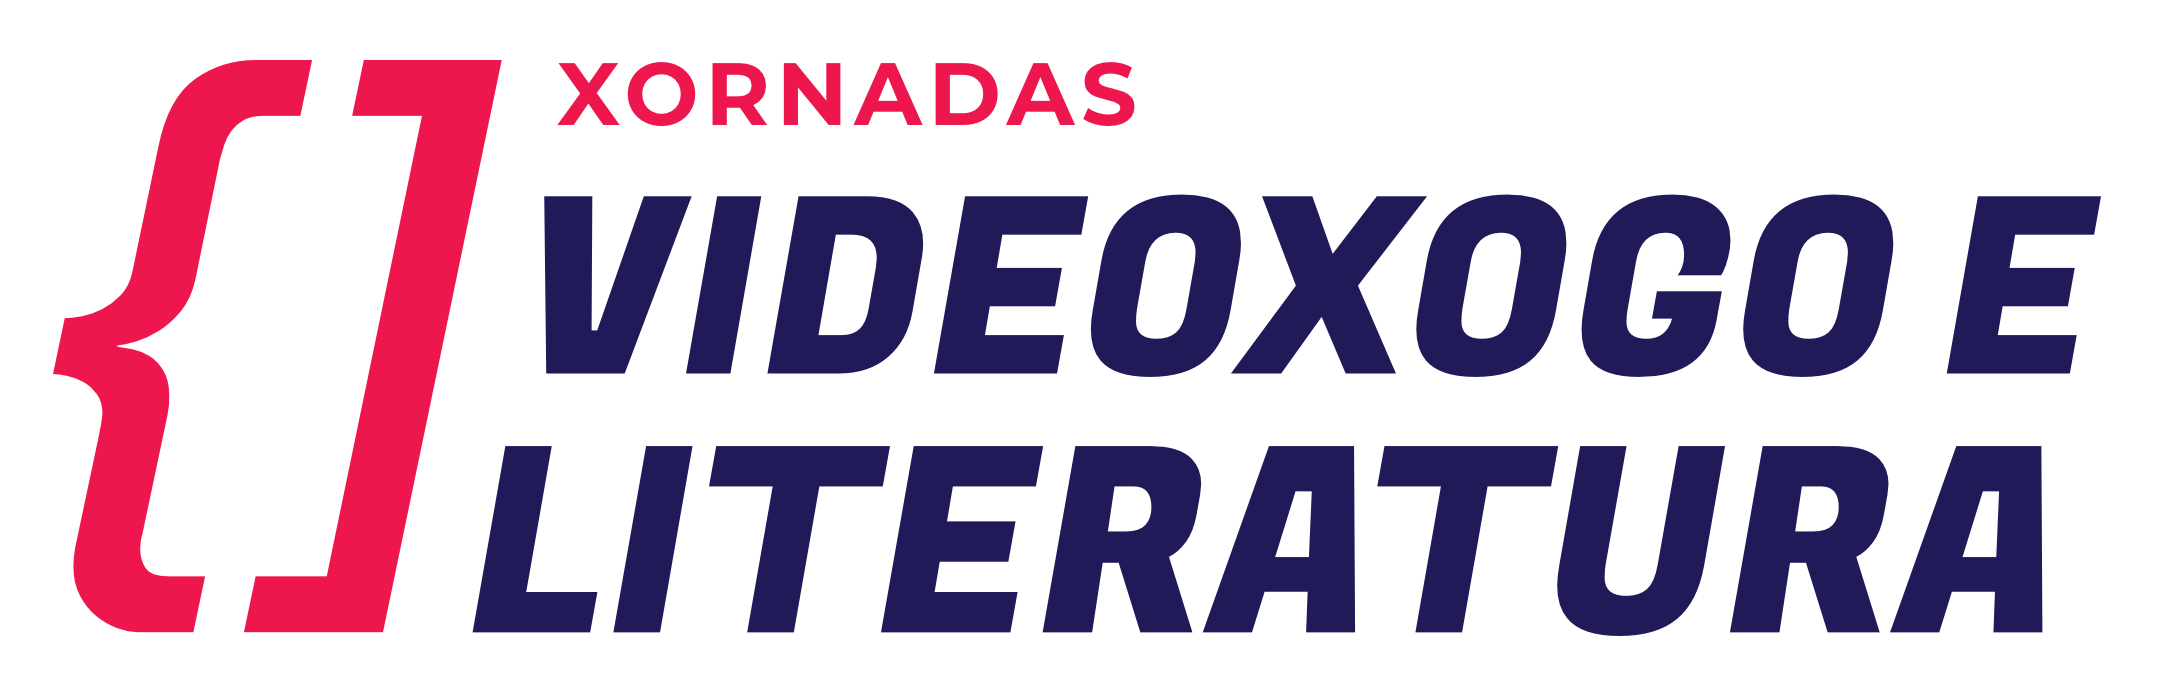 Logotipo Videoxogo e literatura con borde blanco